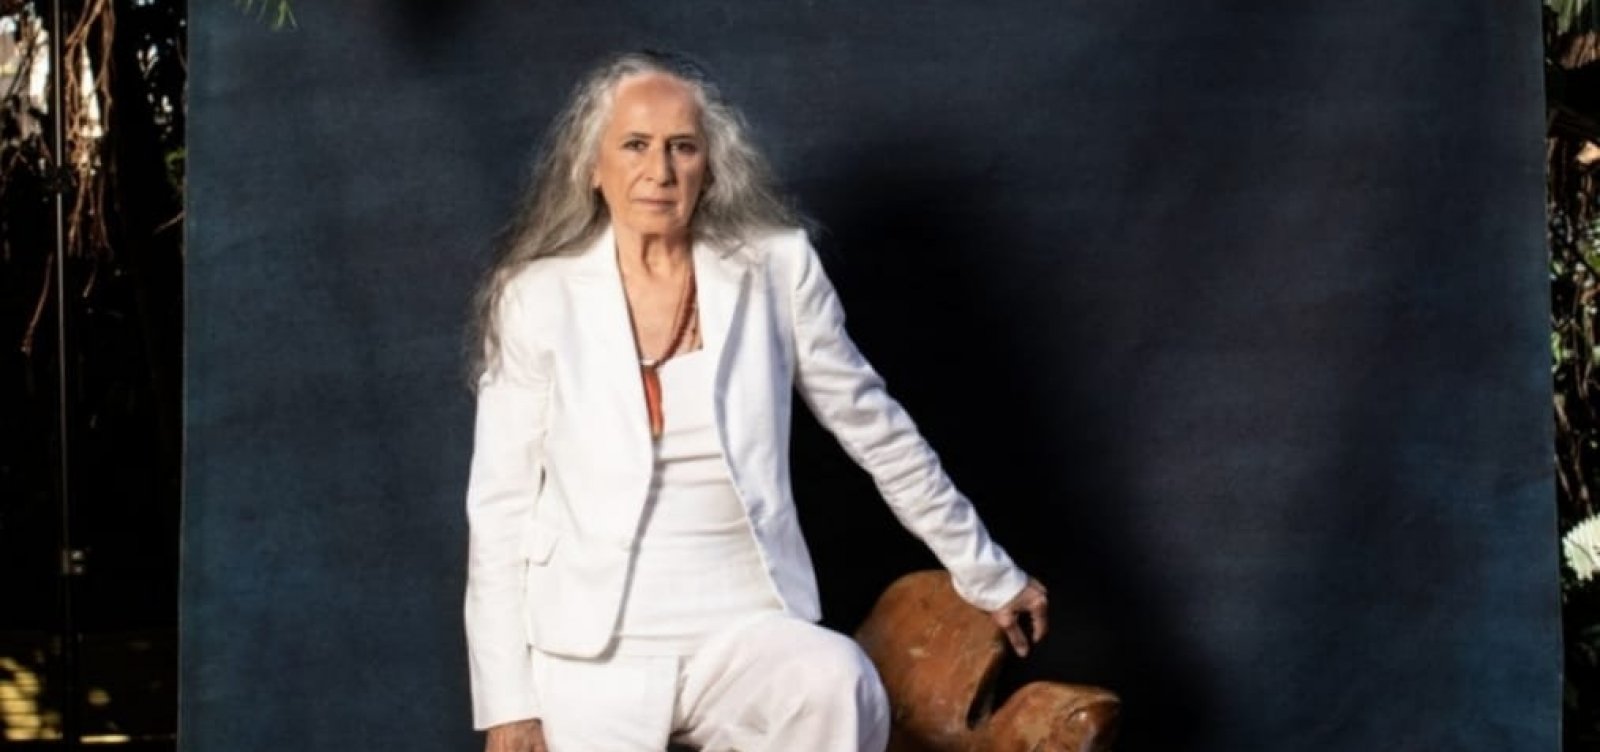 Maria Bethânia faz 75 anos e anuncia nova música: 'A flor encarnada'